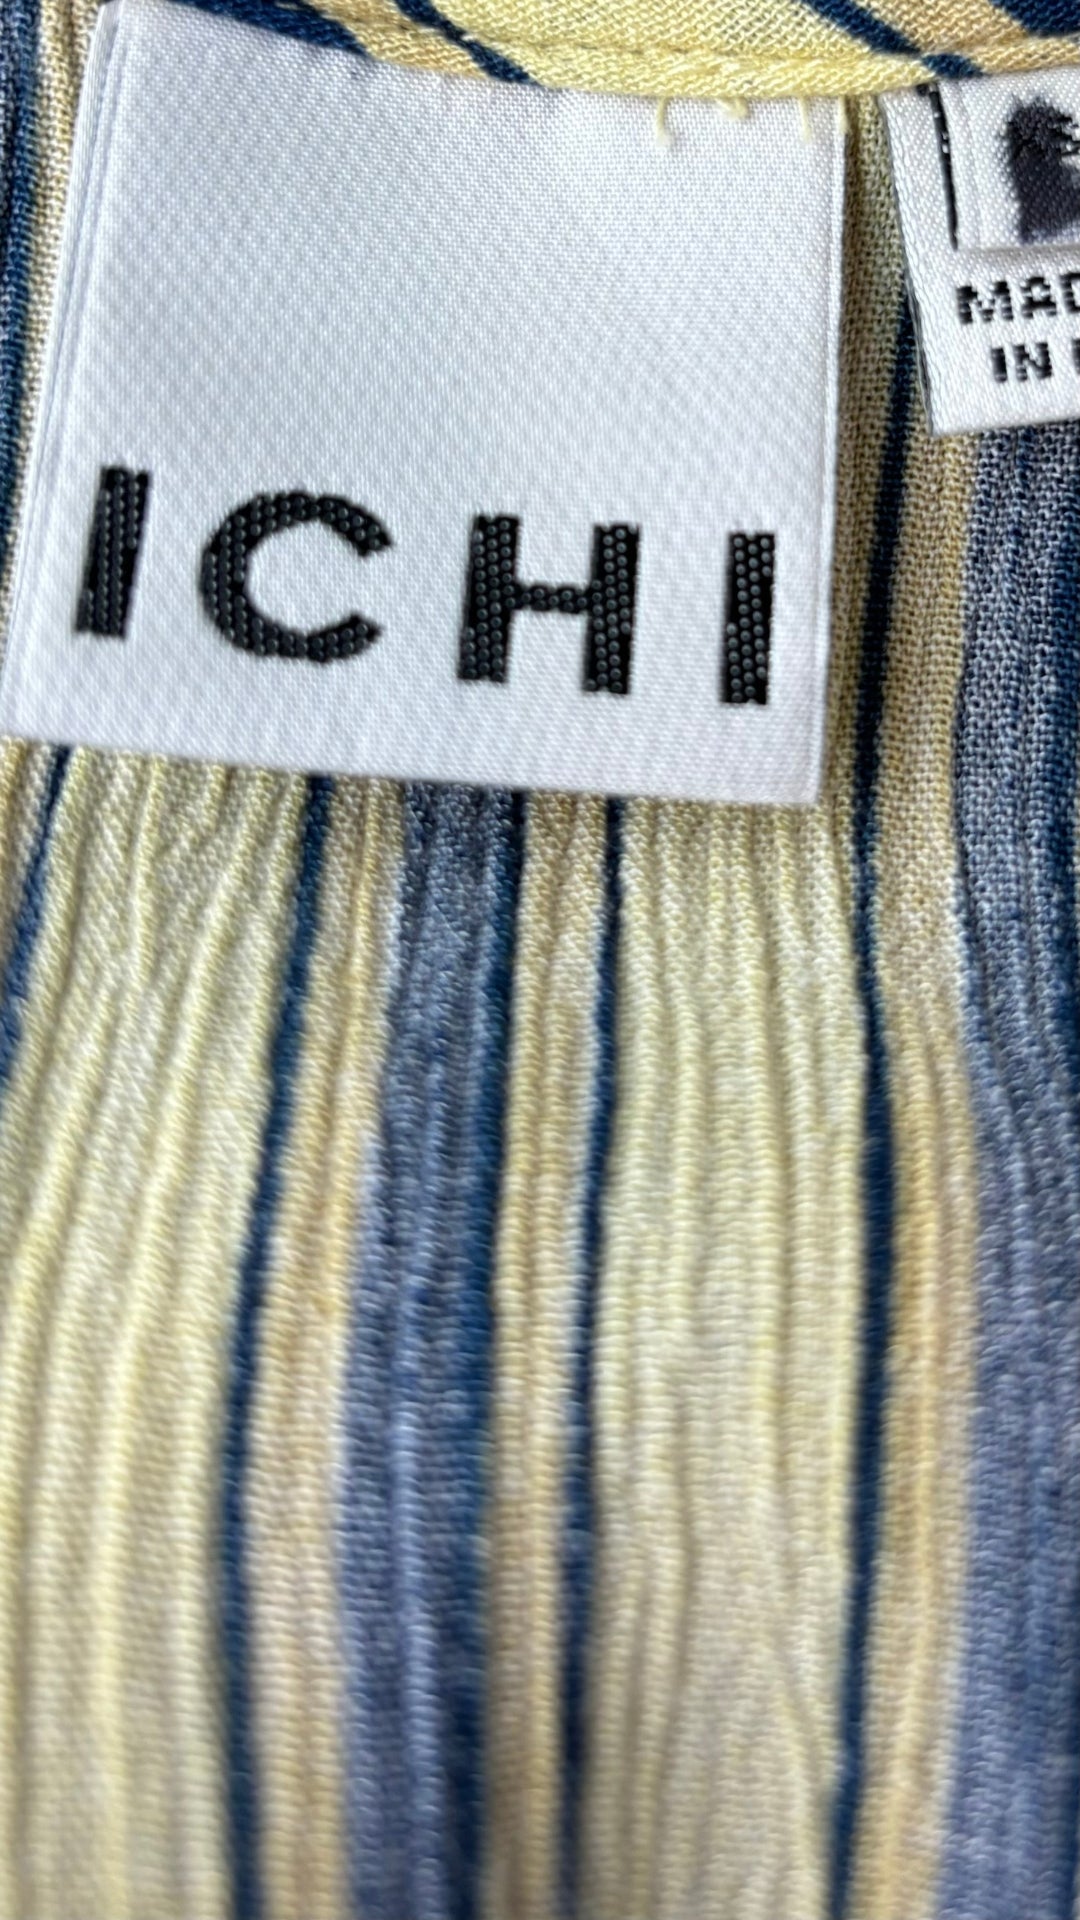 Robe jaune à rayures Ichi, taille m/l. Vue de l'étiquette de marque.